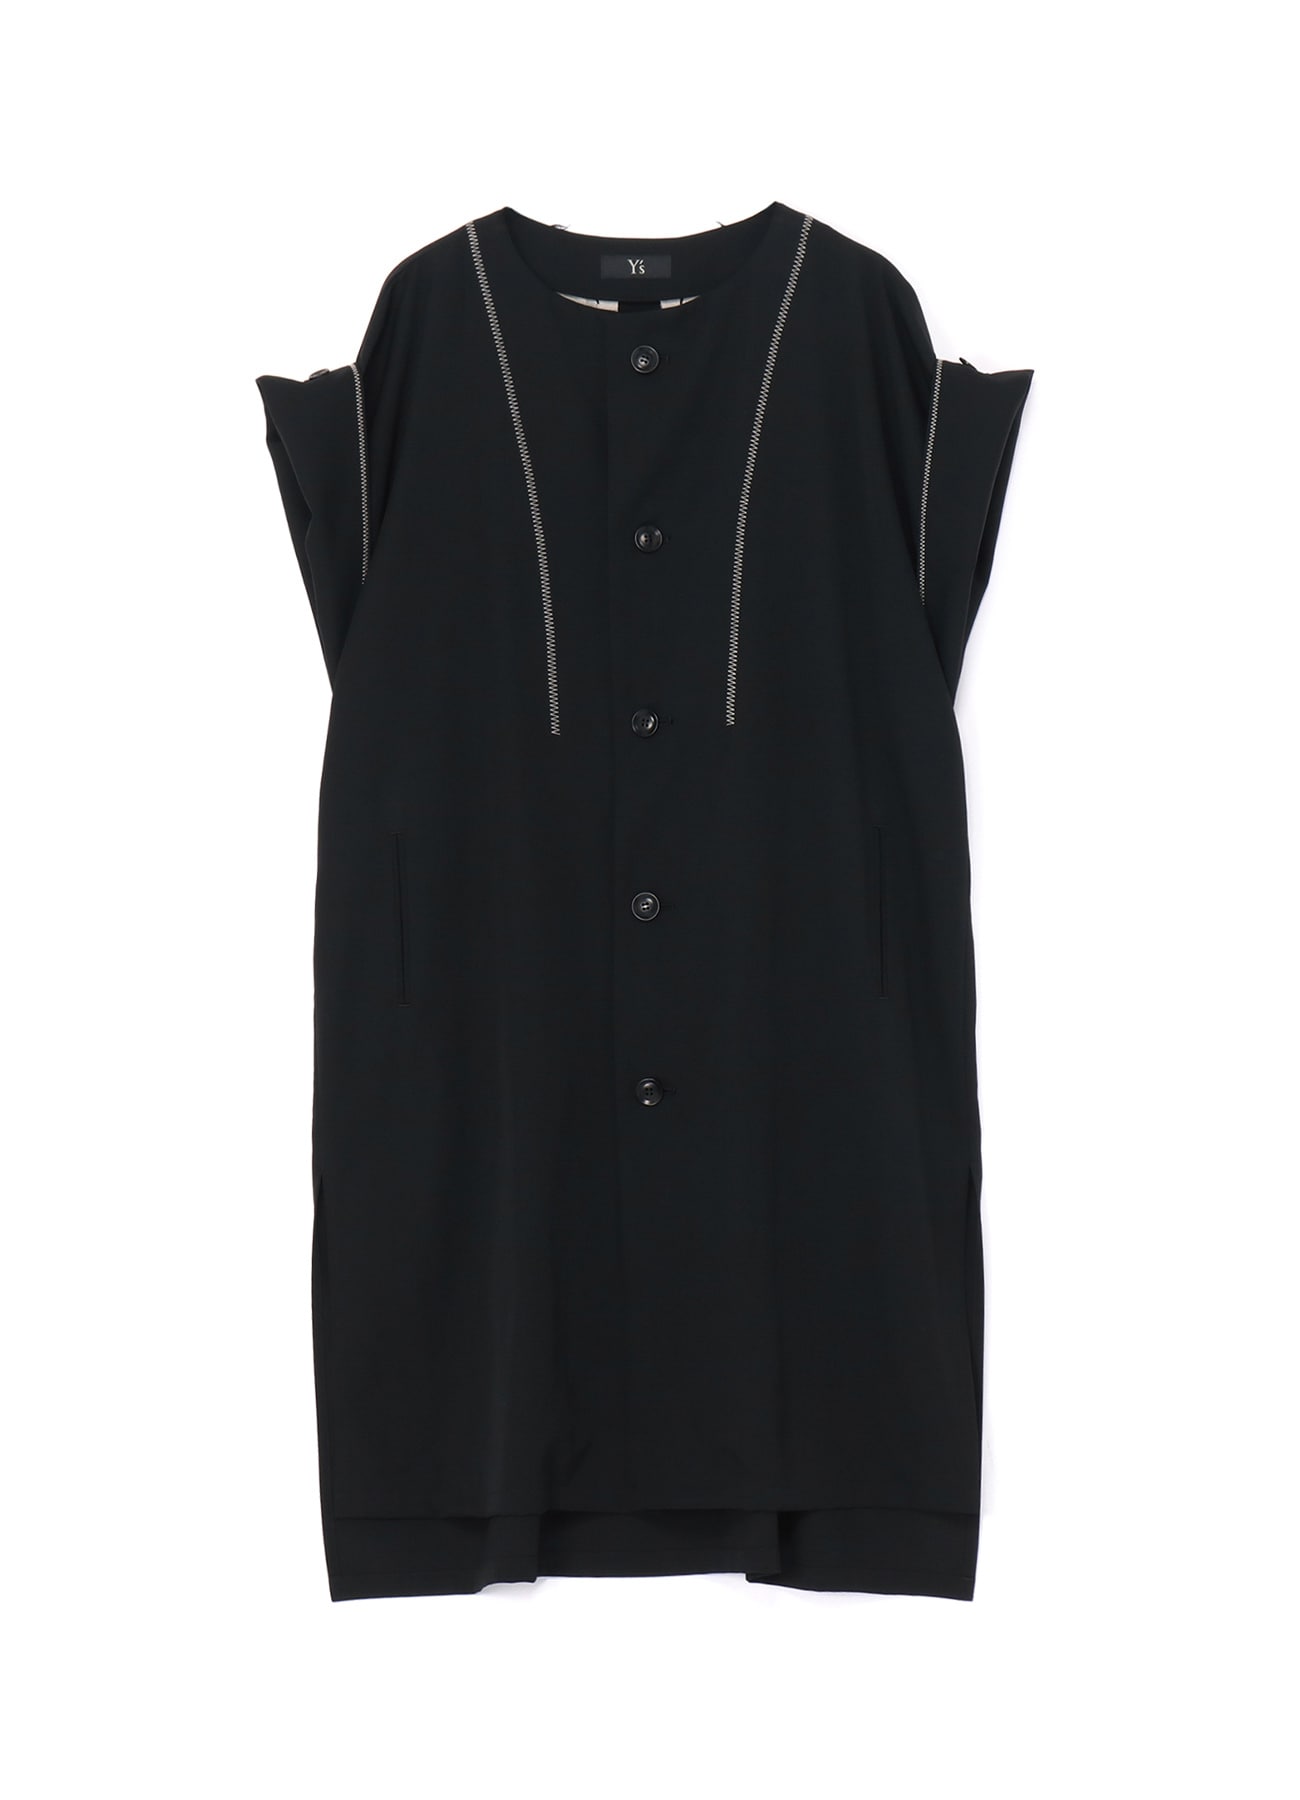 GABARDINE U-BACK EMBEDDED GUSSET DRESS(XS Black): Vintage 1.1｜THE